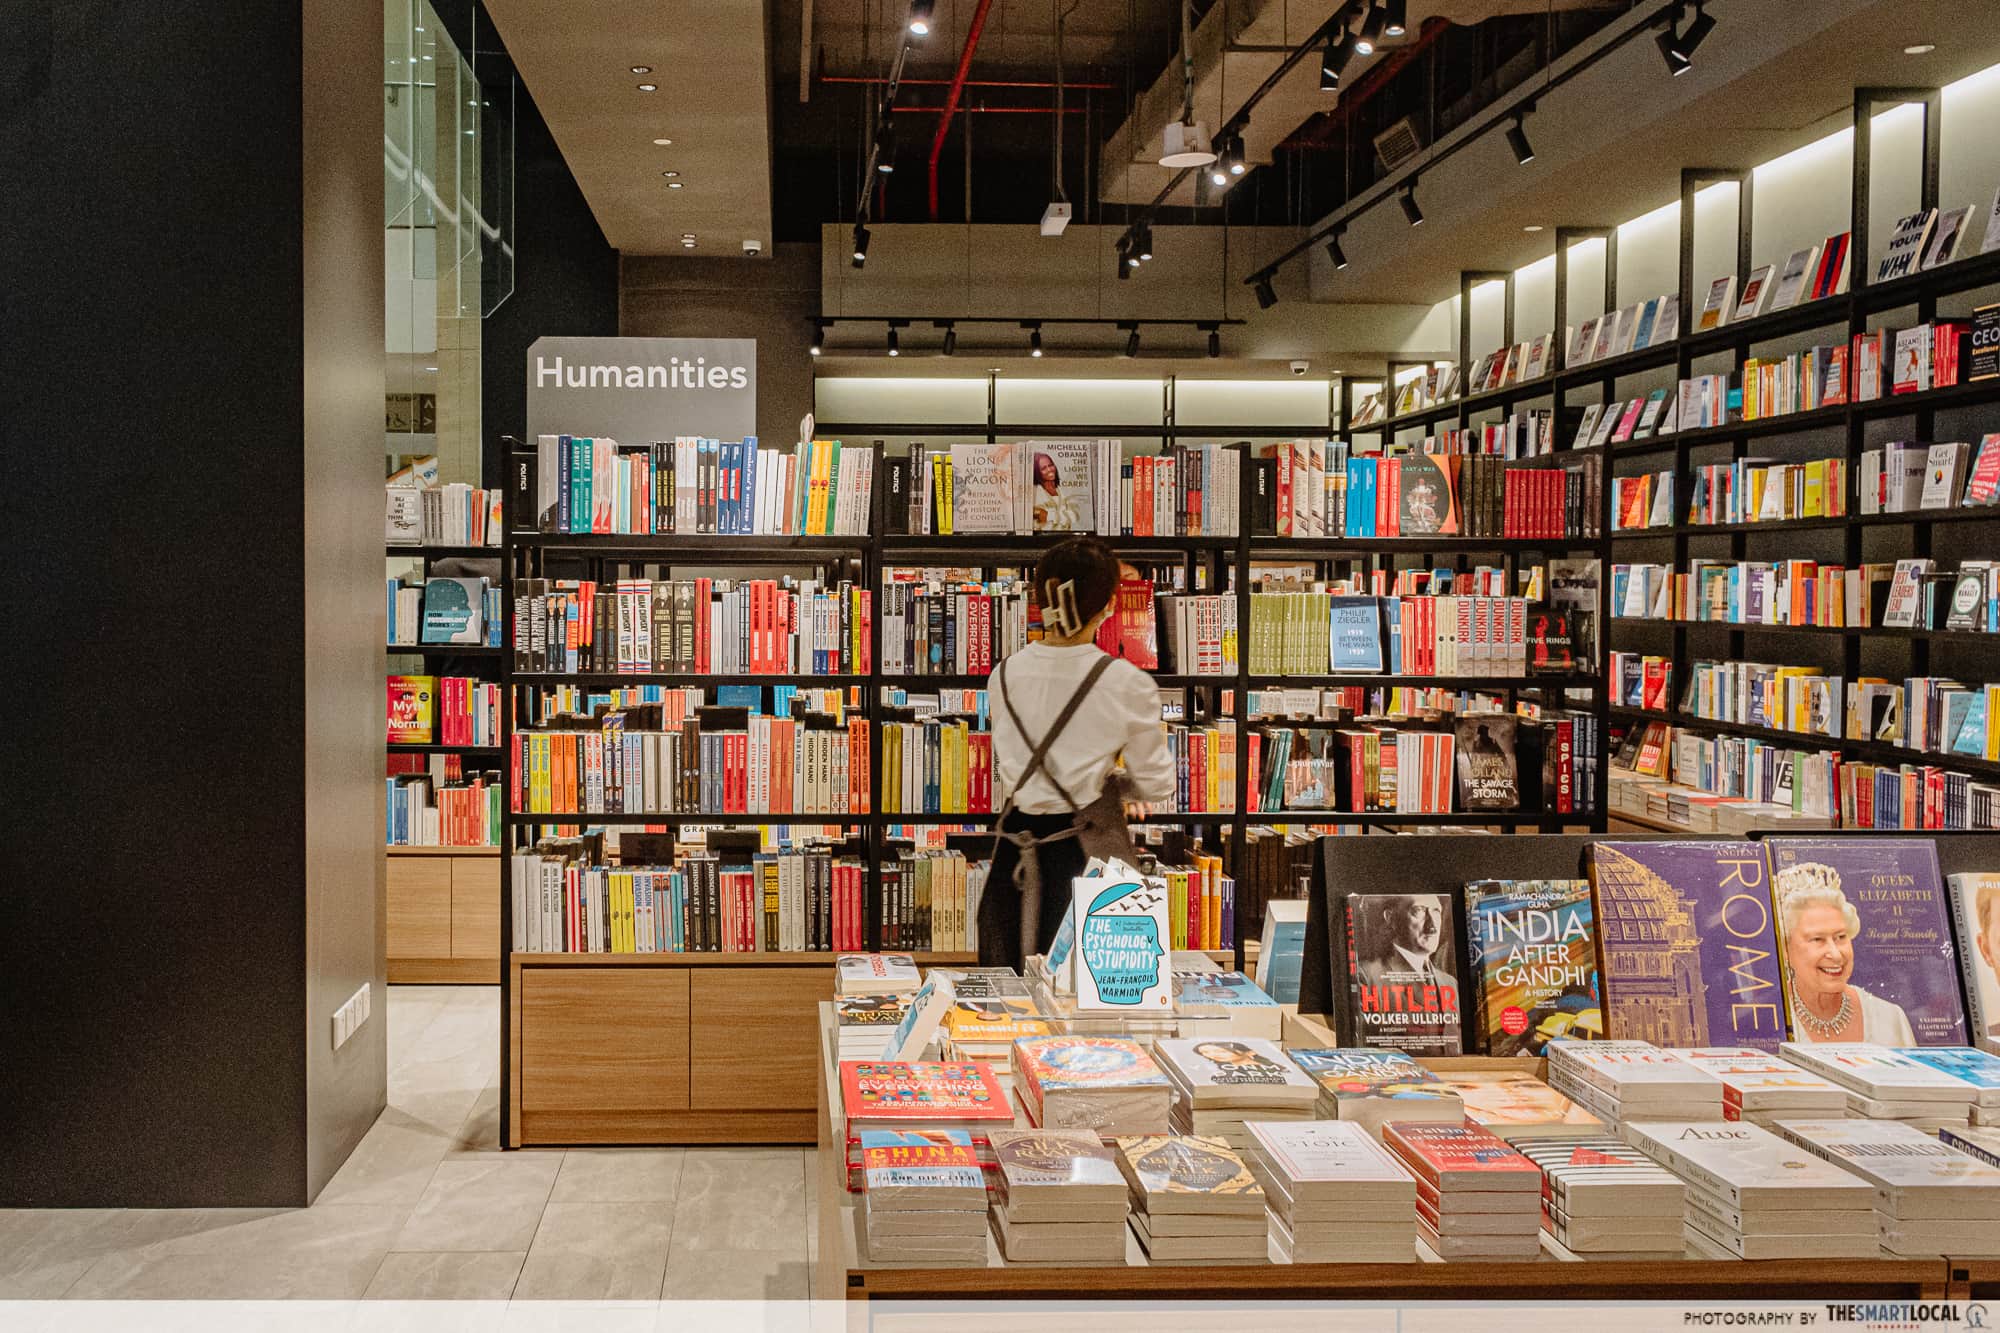 Tsutaya Bookstore Intermark Mall - humanities section